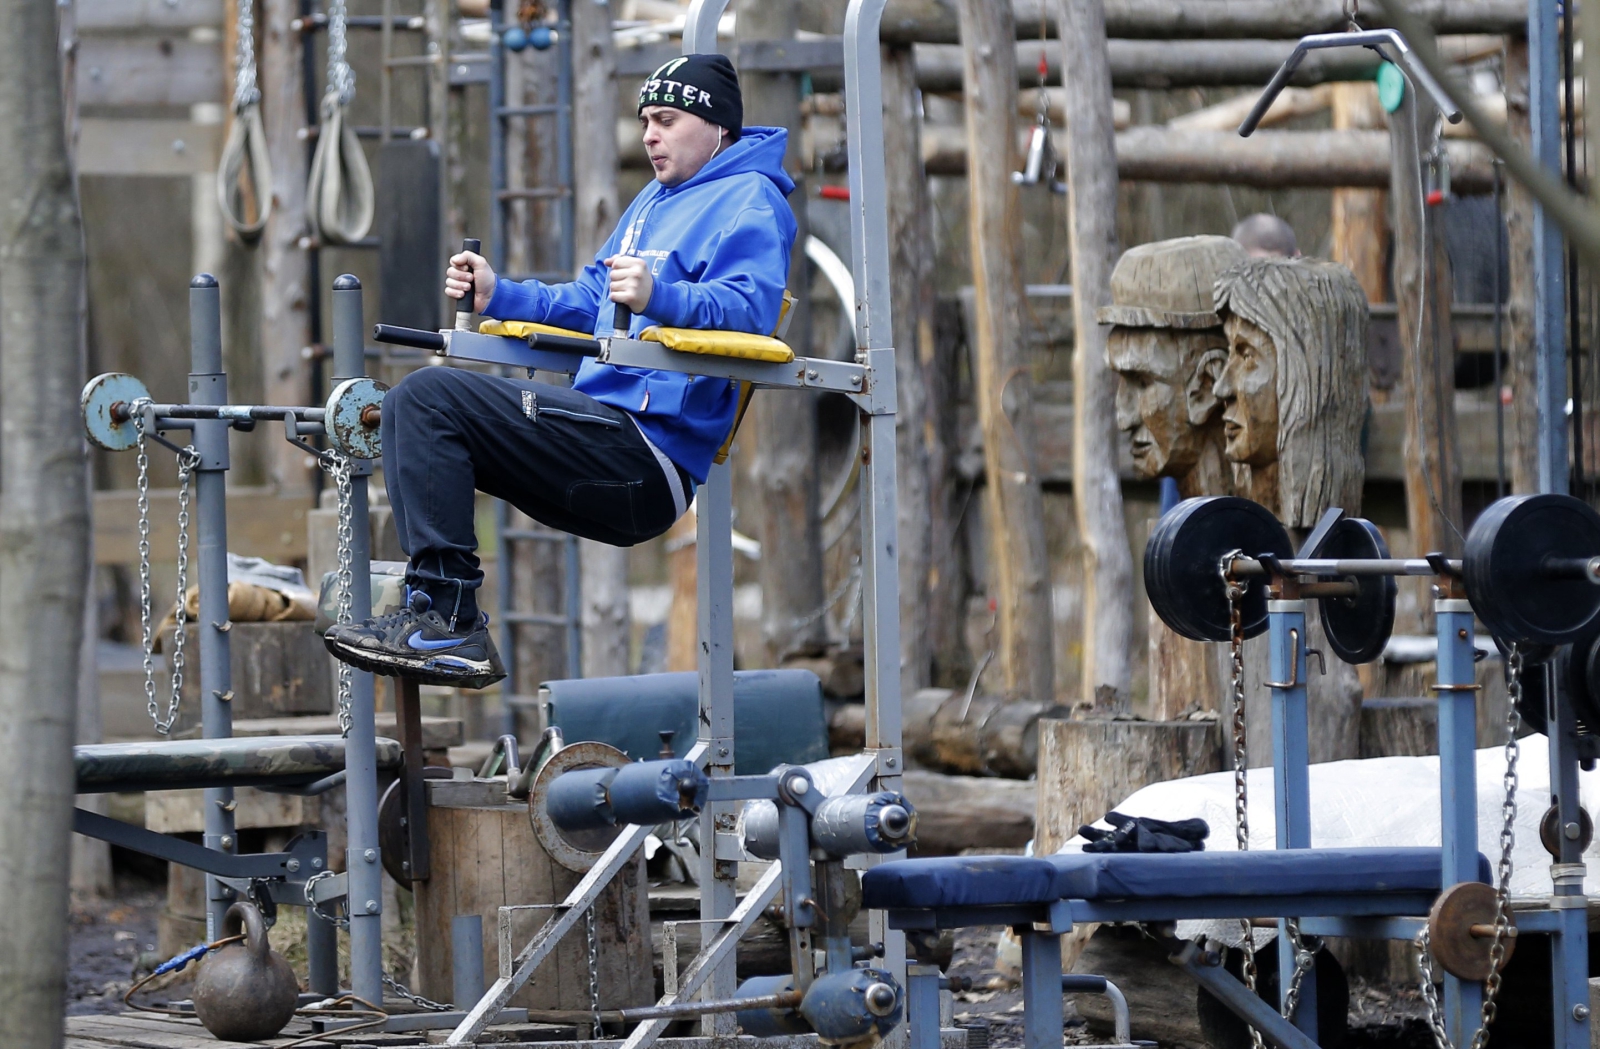 Rosjanin ćwiczy na siłowni wybudowanej w Timiryazevskym Parku, Moskwa, Rosja.